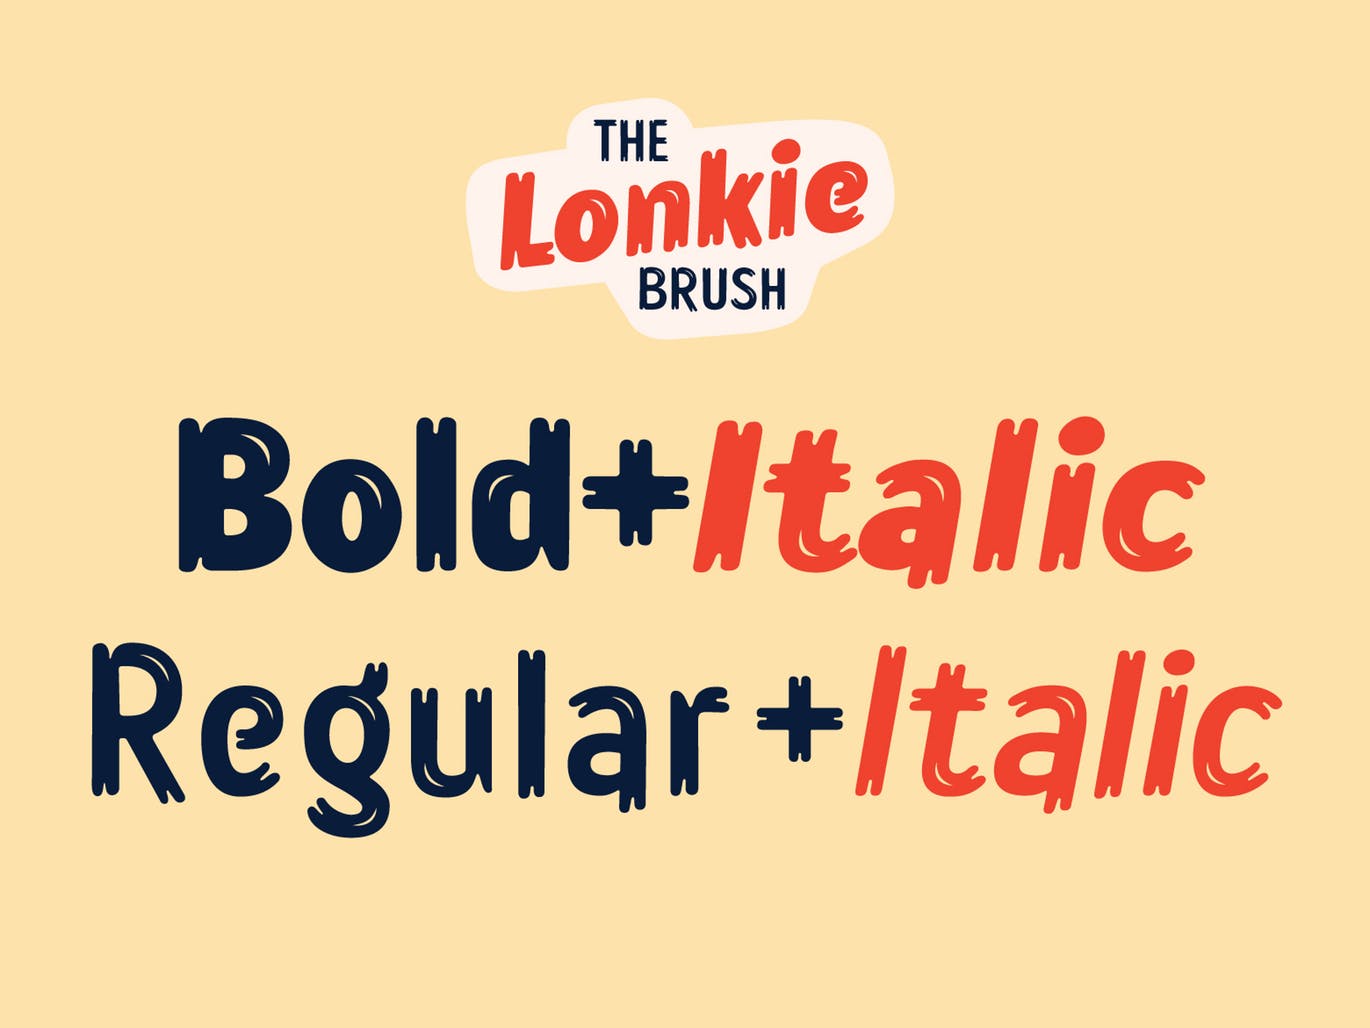 复古丹麦电影海报设计英文笔刷字体 Lonkie Brush插图3